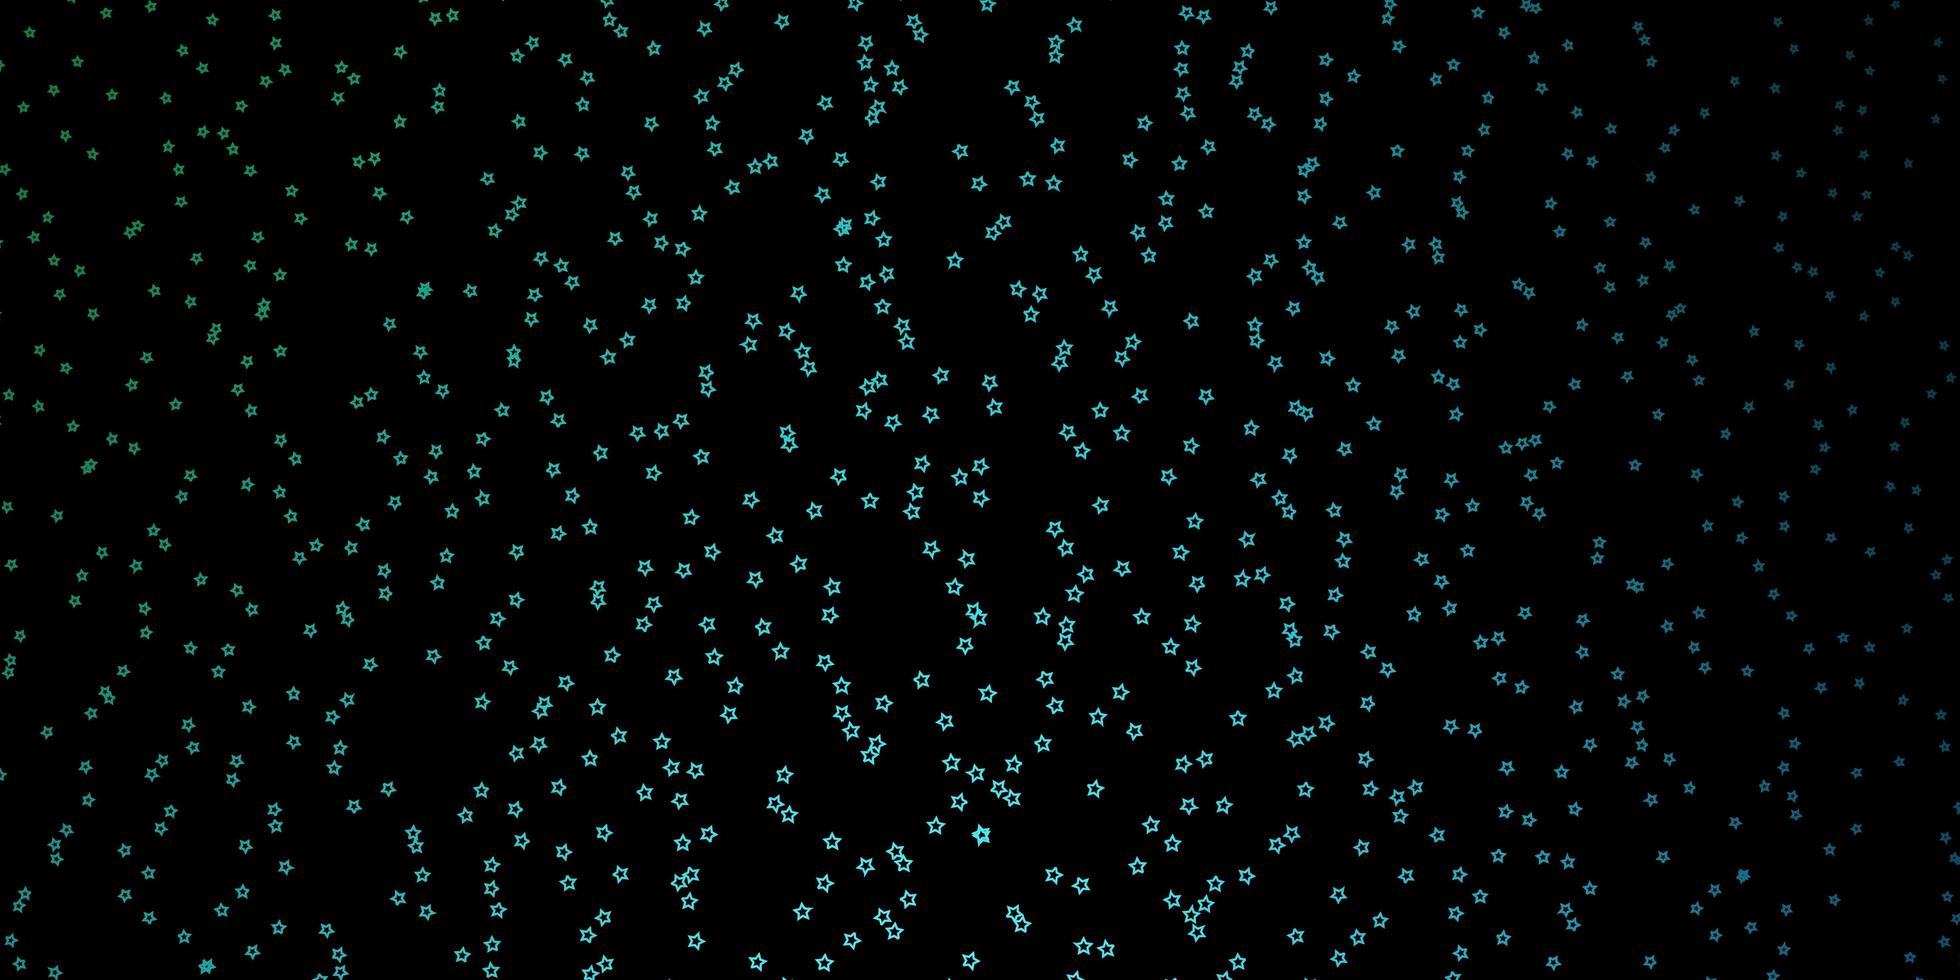 trama vettoriale blu scuro con bellissime stelle illustrazione astratta geometrica moderna con design di stelle per la tua promozione aziendale